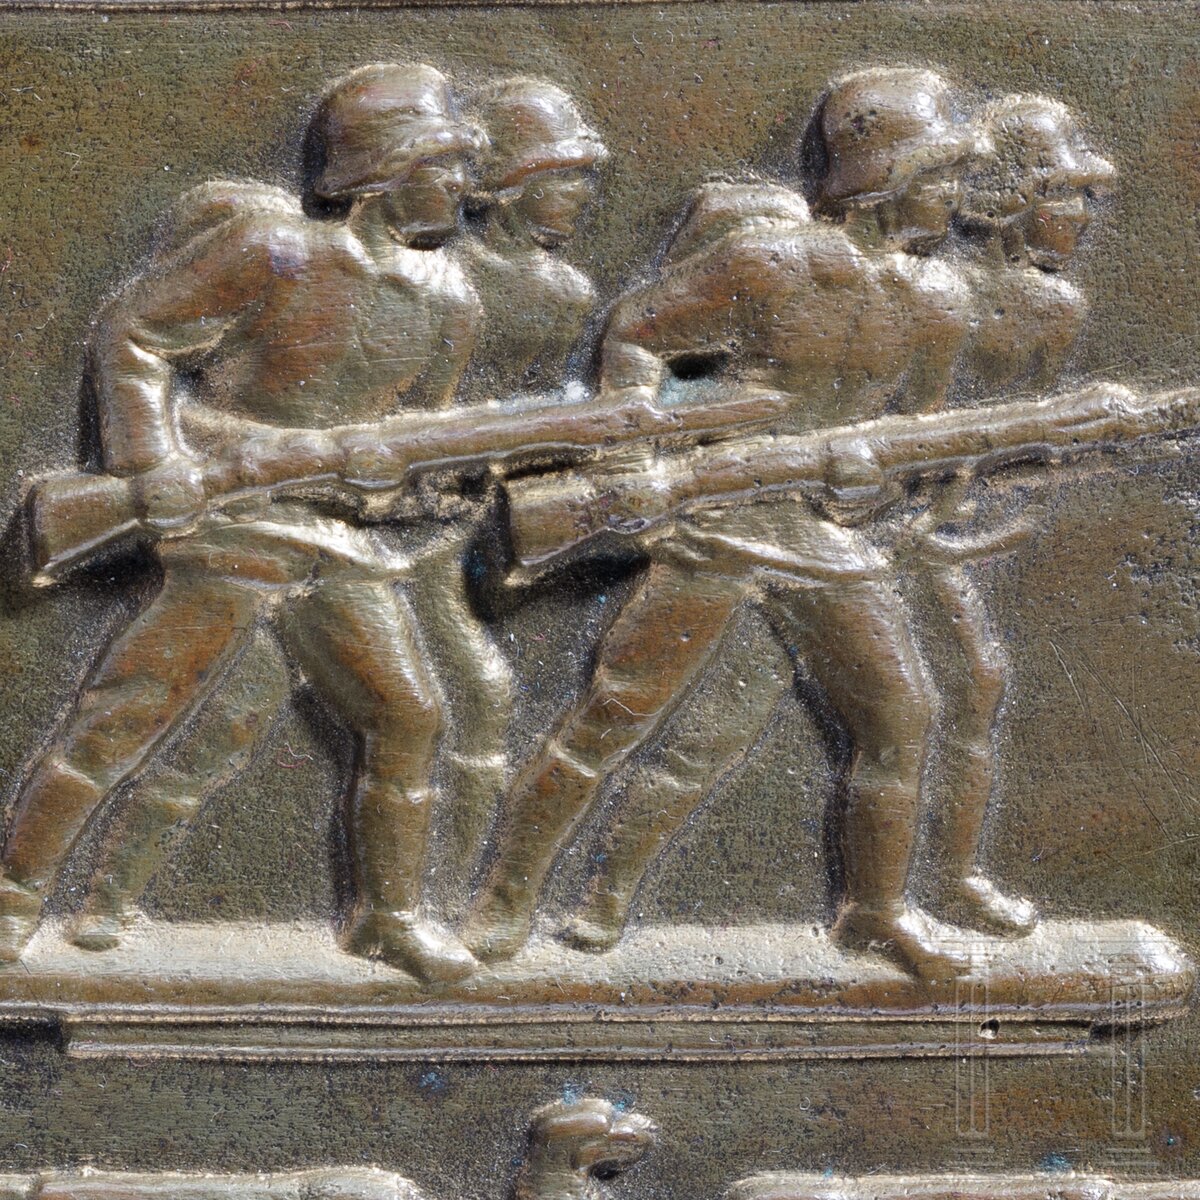 Ehrenplakette des Infanterie-Regiments 7 "Schweidnitz" - Image 3 of 3